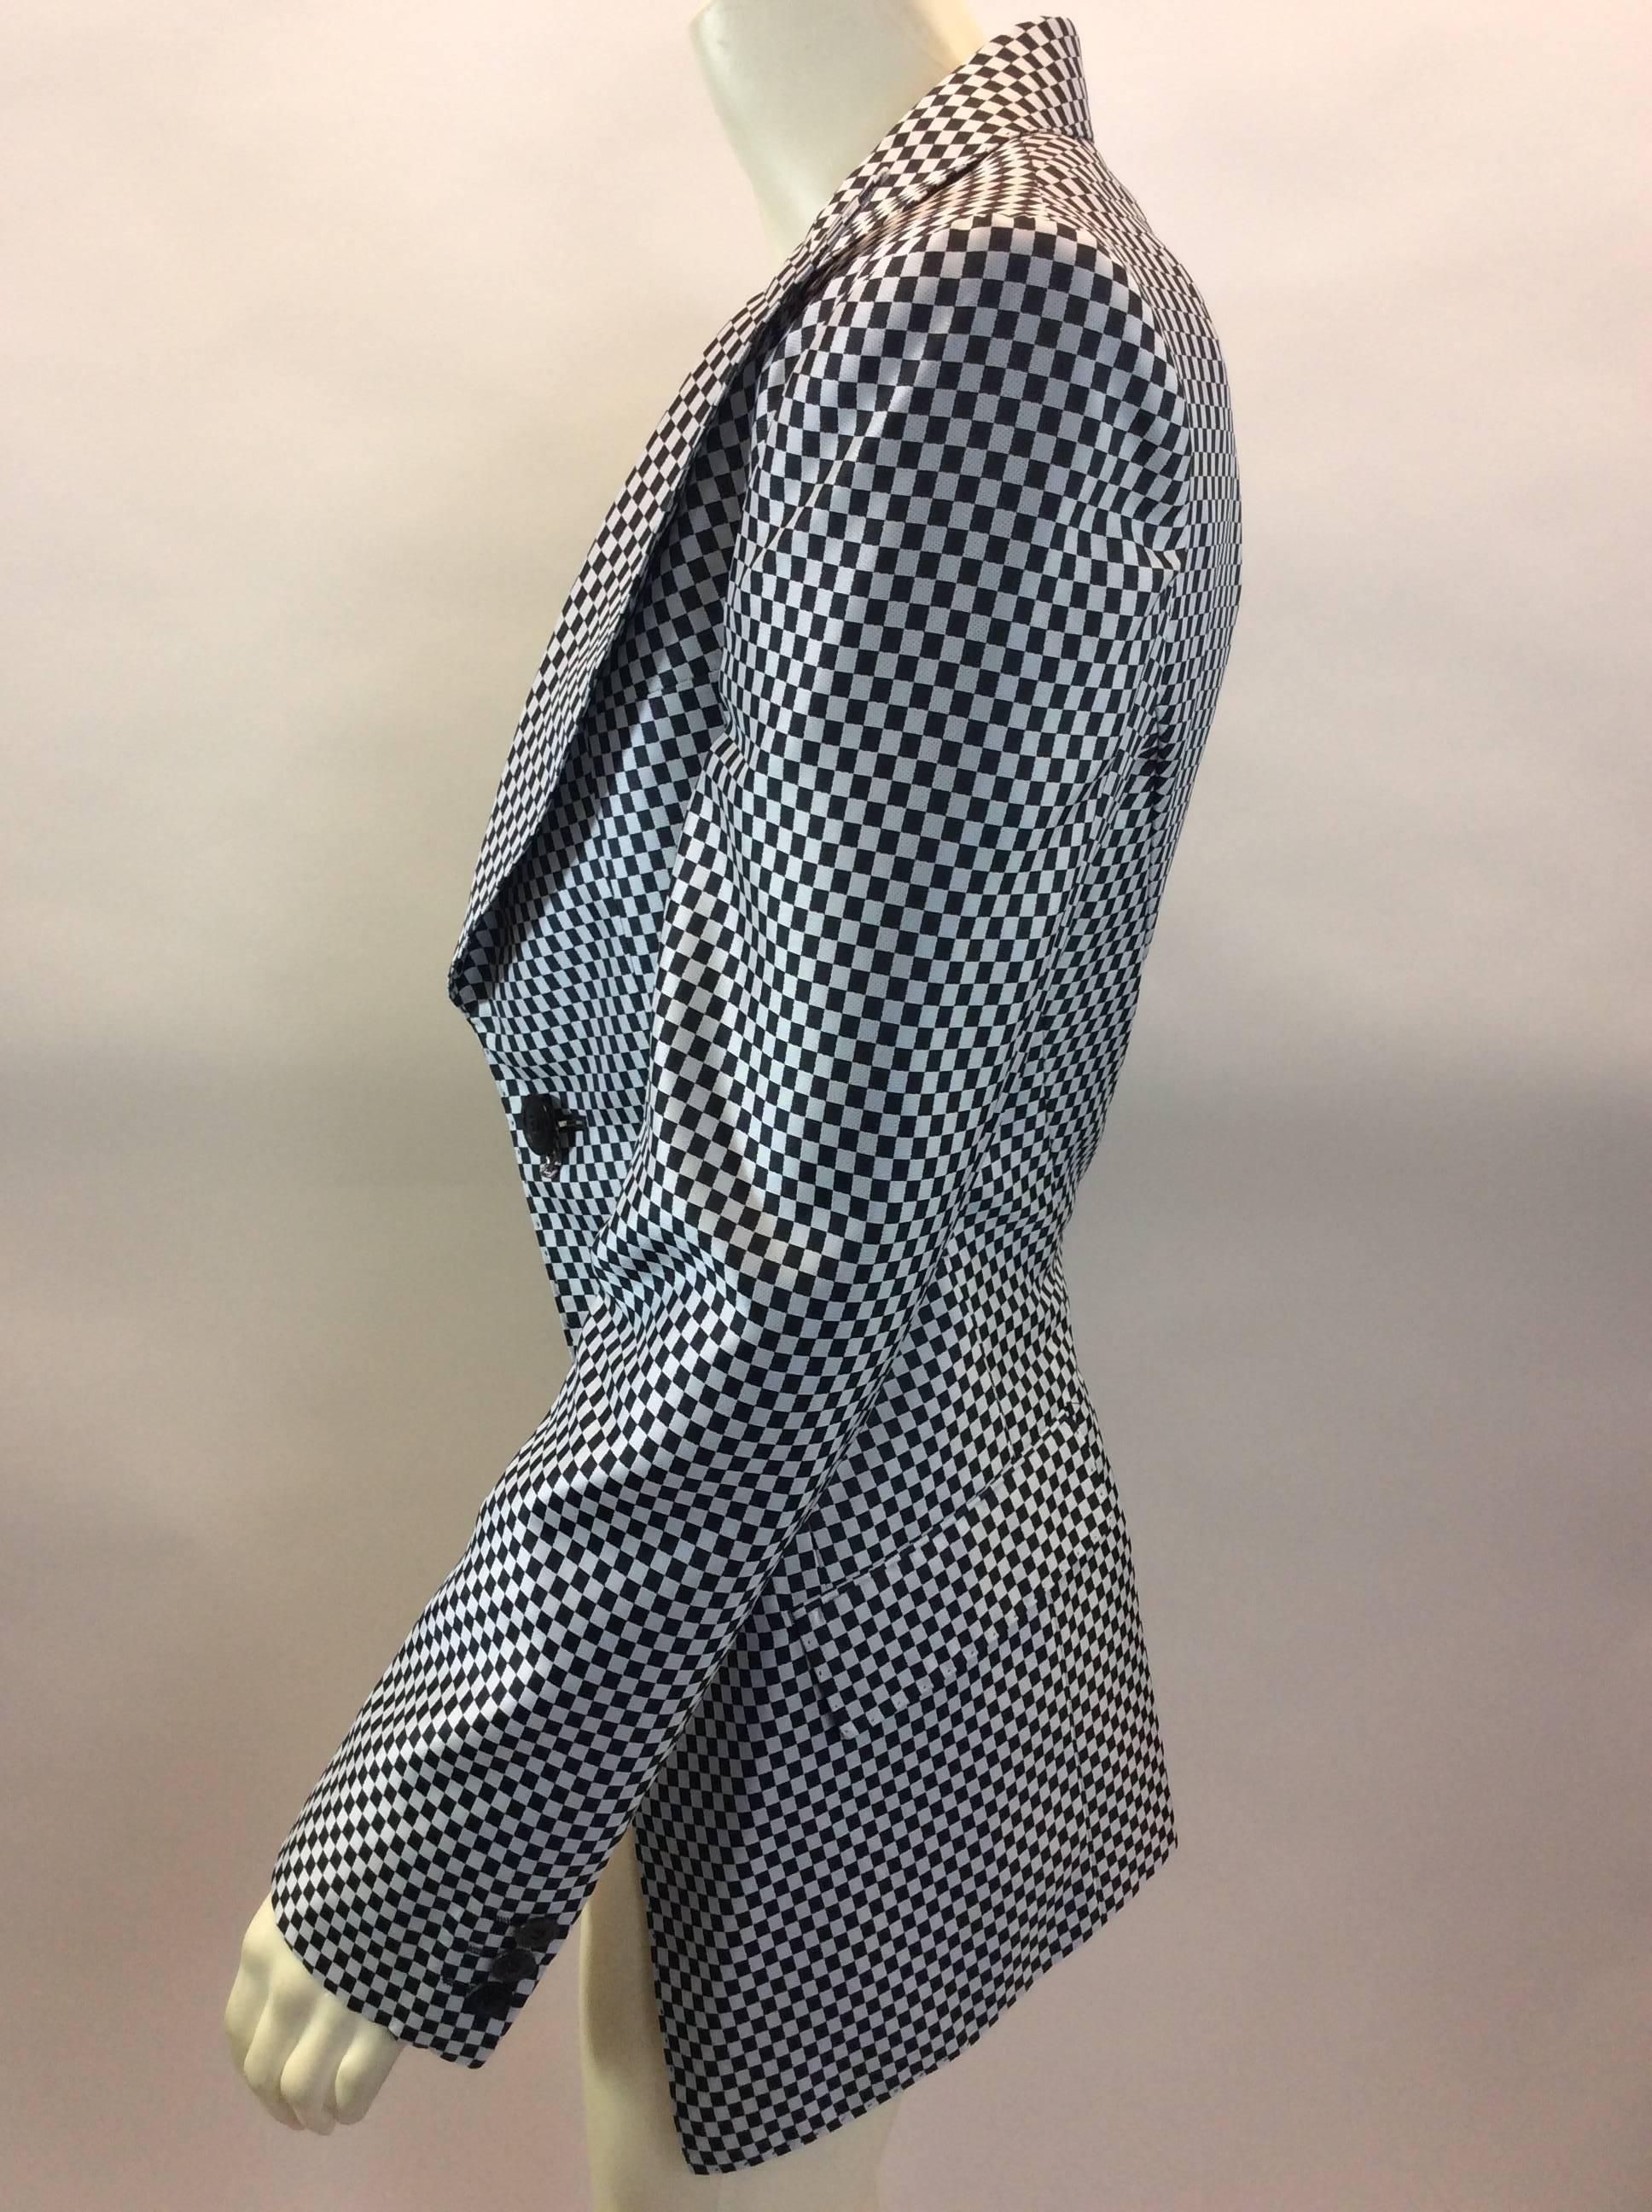 Junya Watanabe Black and White Checkered Blazer
$489
Length 27